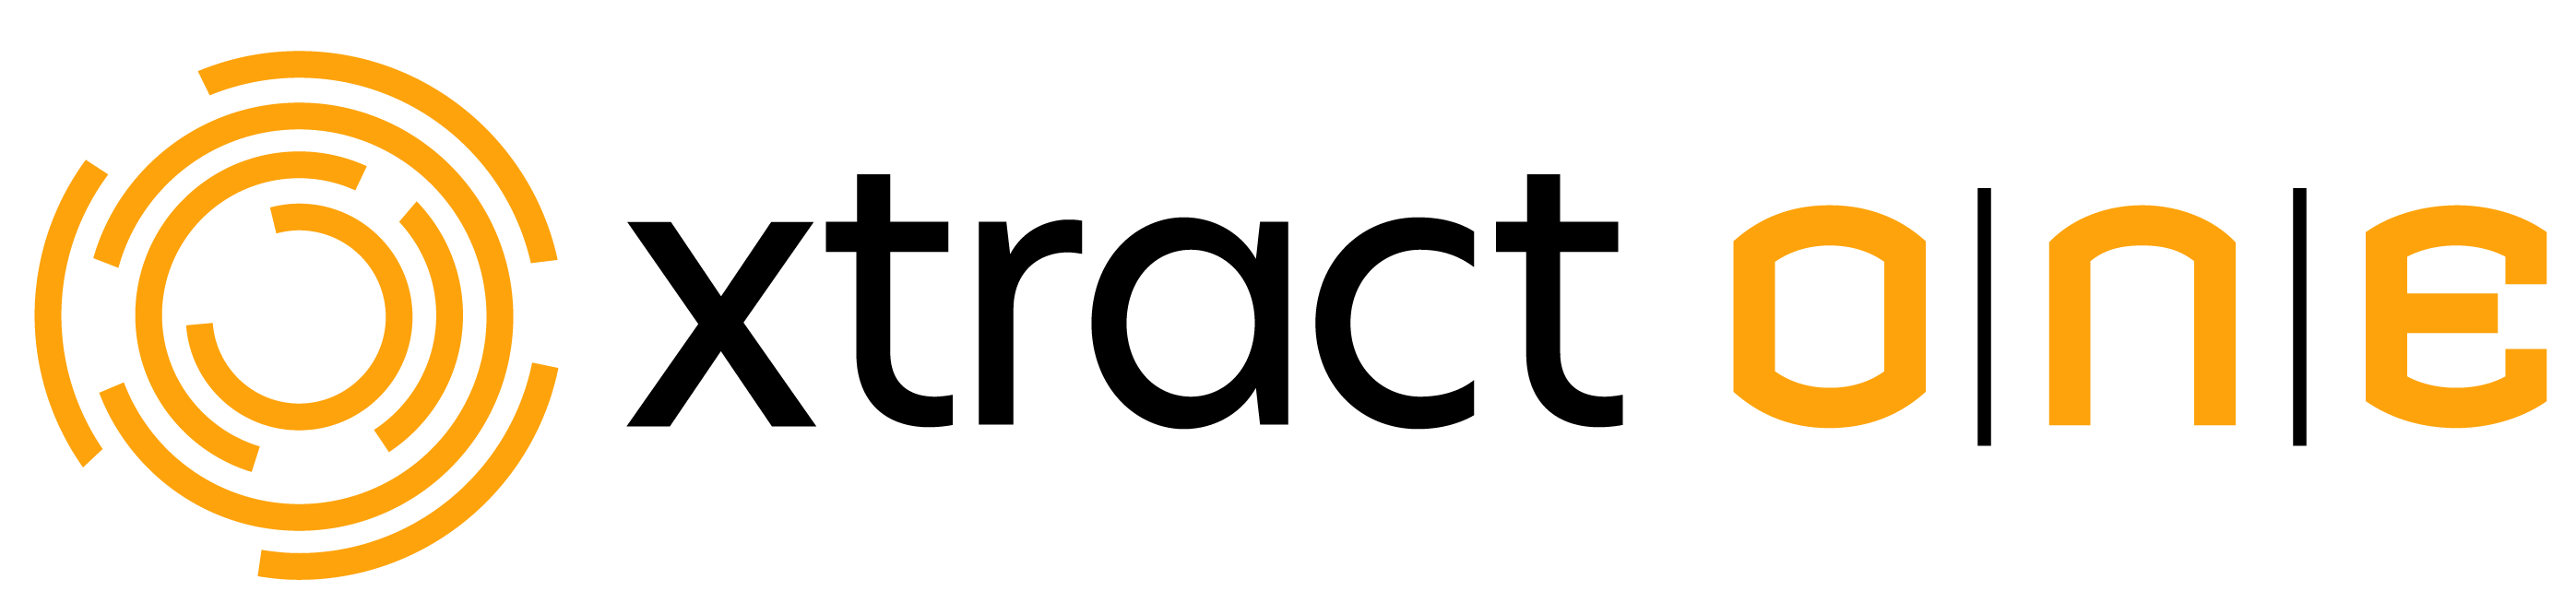 xtractone Logo